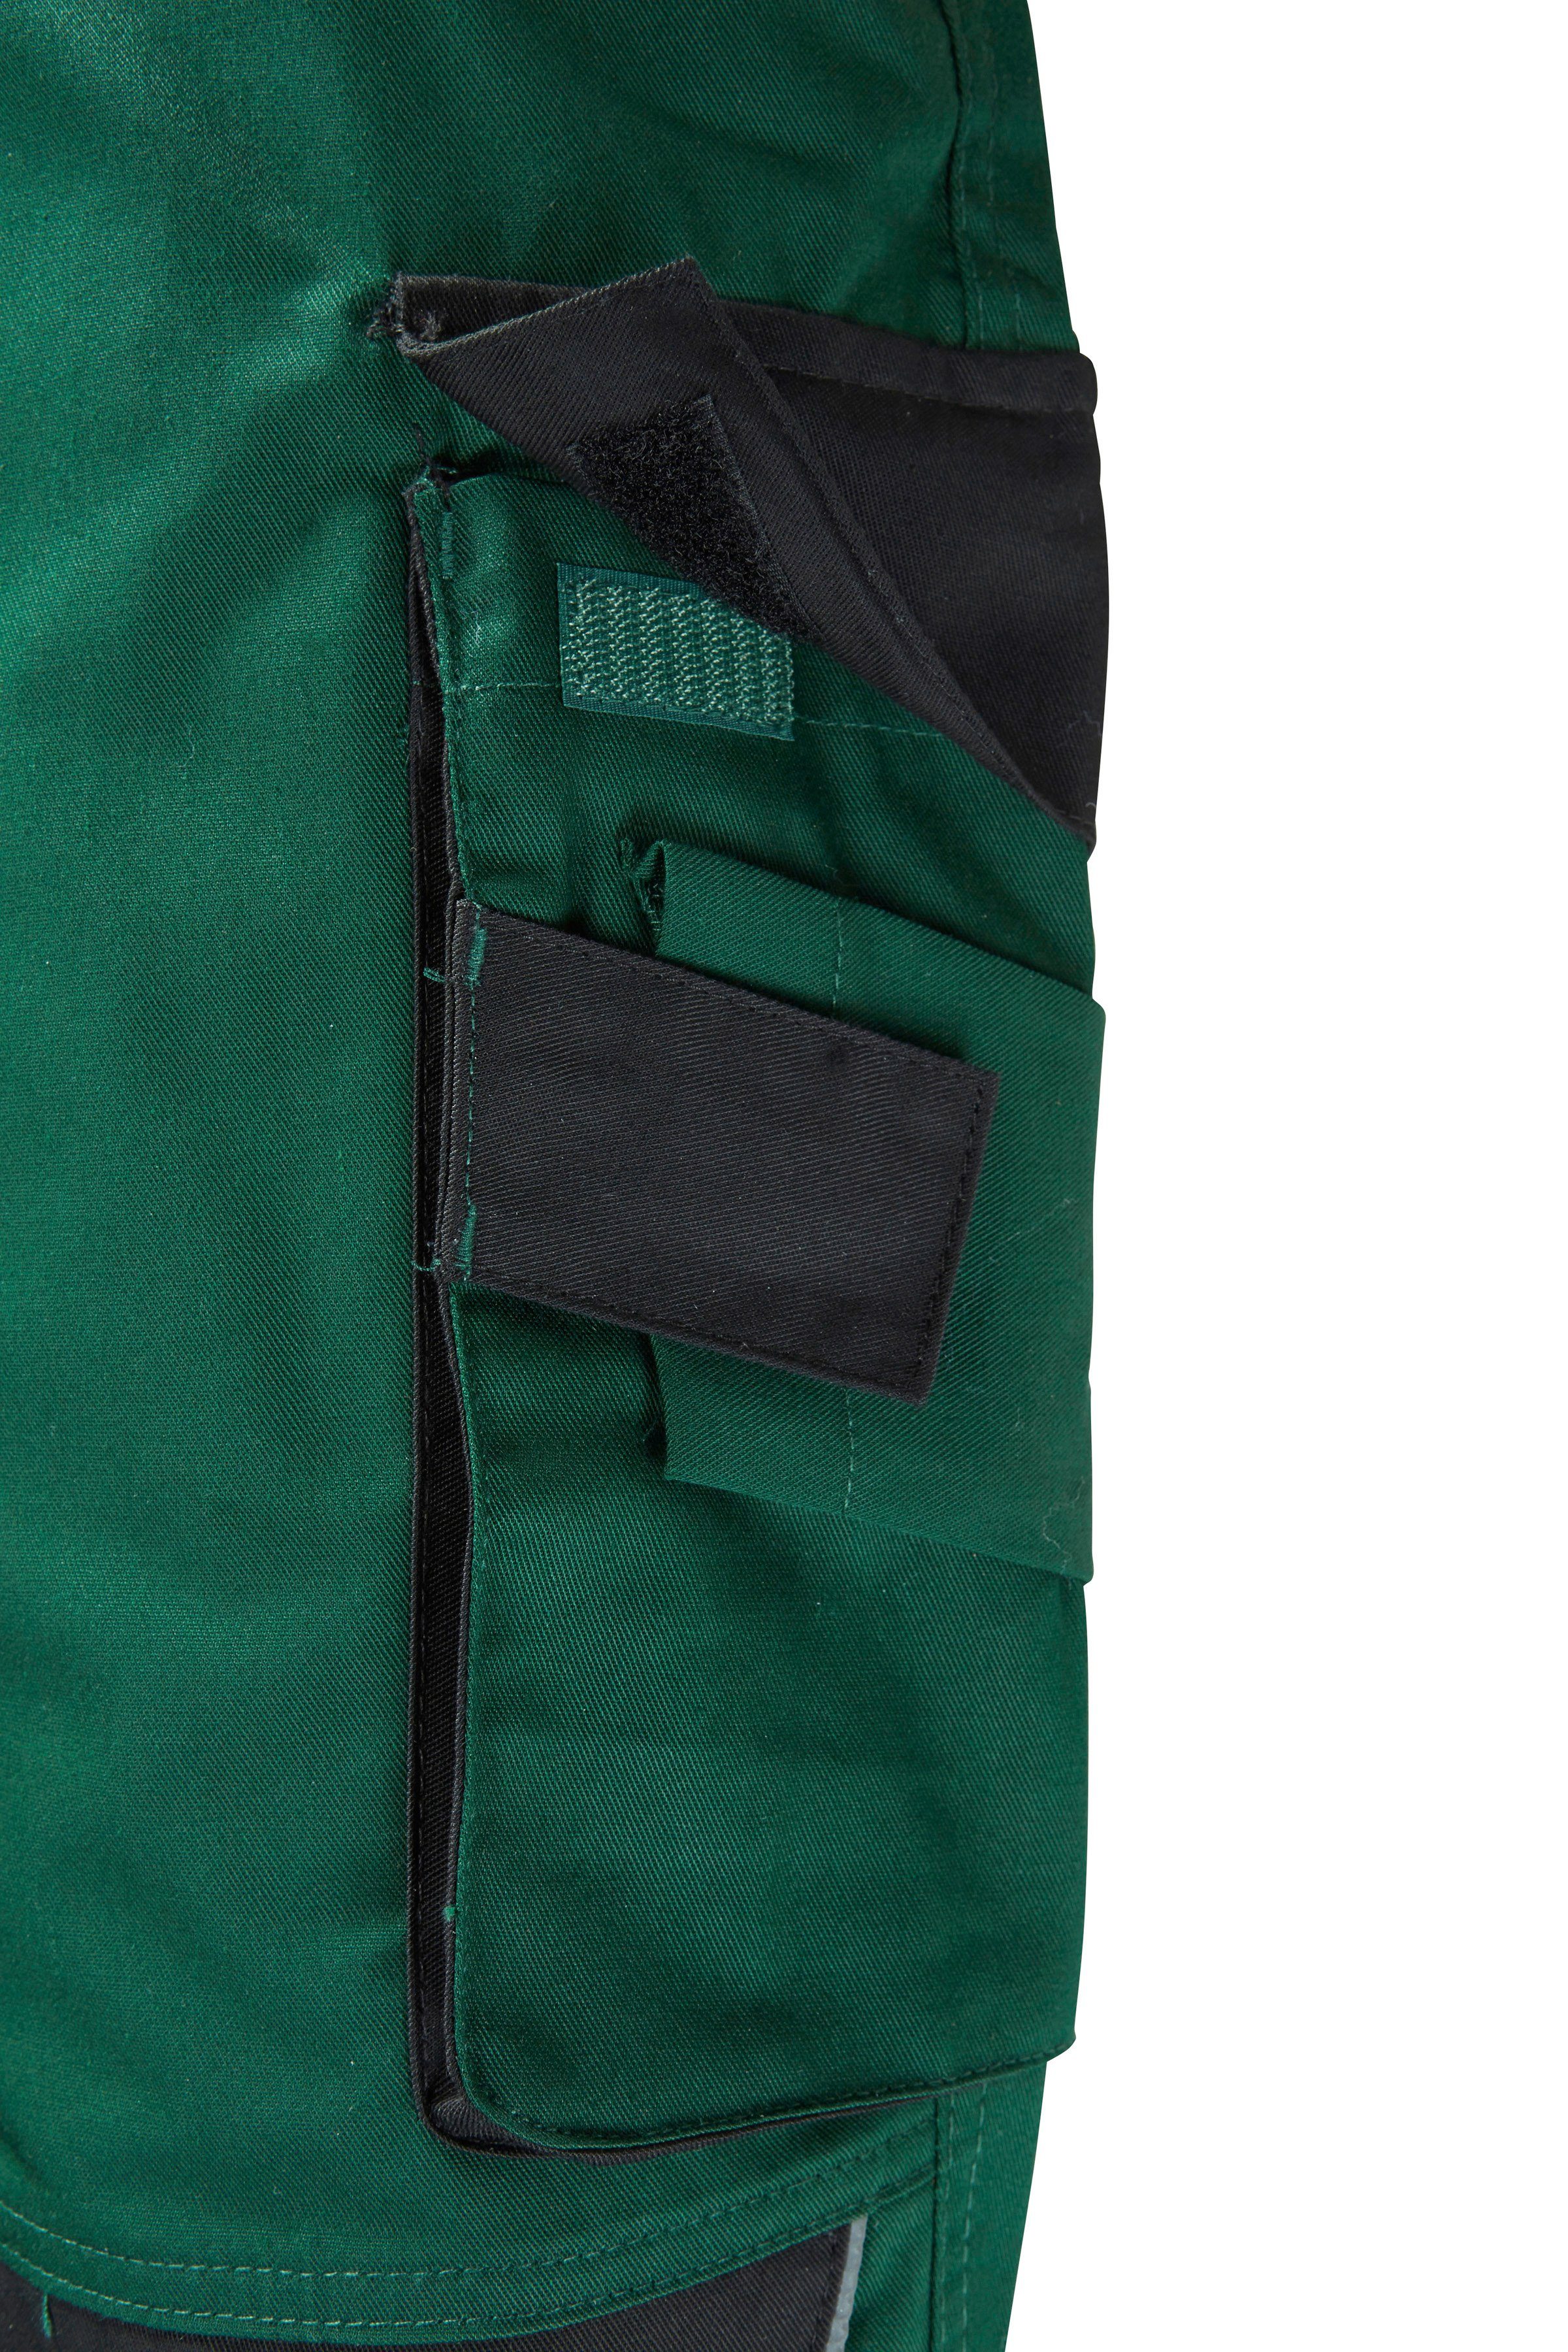 safety& more Latzhose Pull grün-schwarz Reflexeinsätzen mit